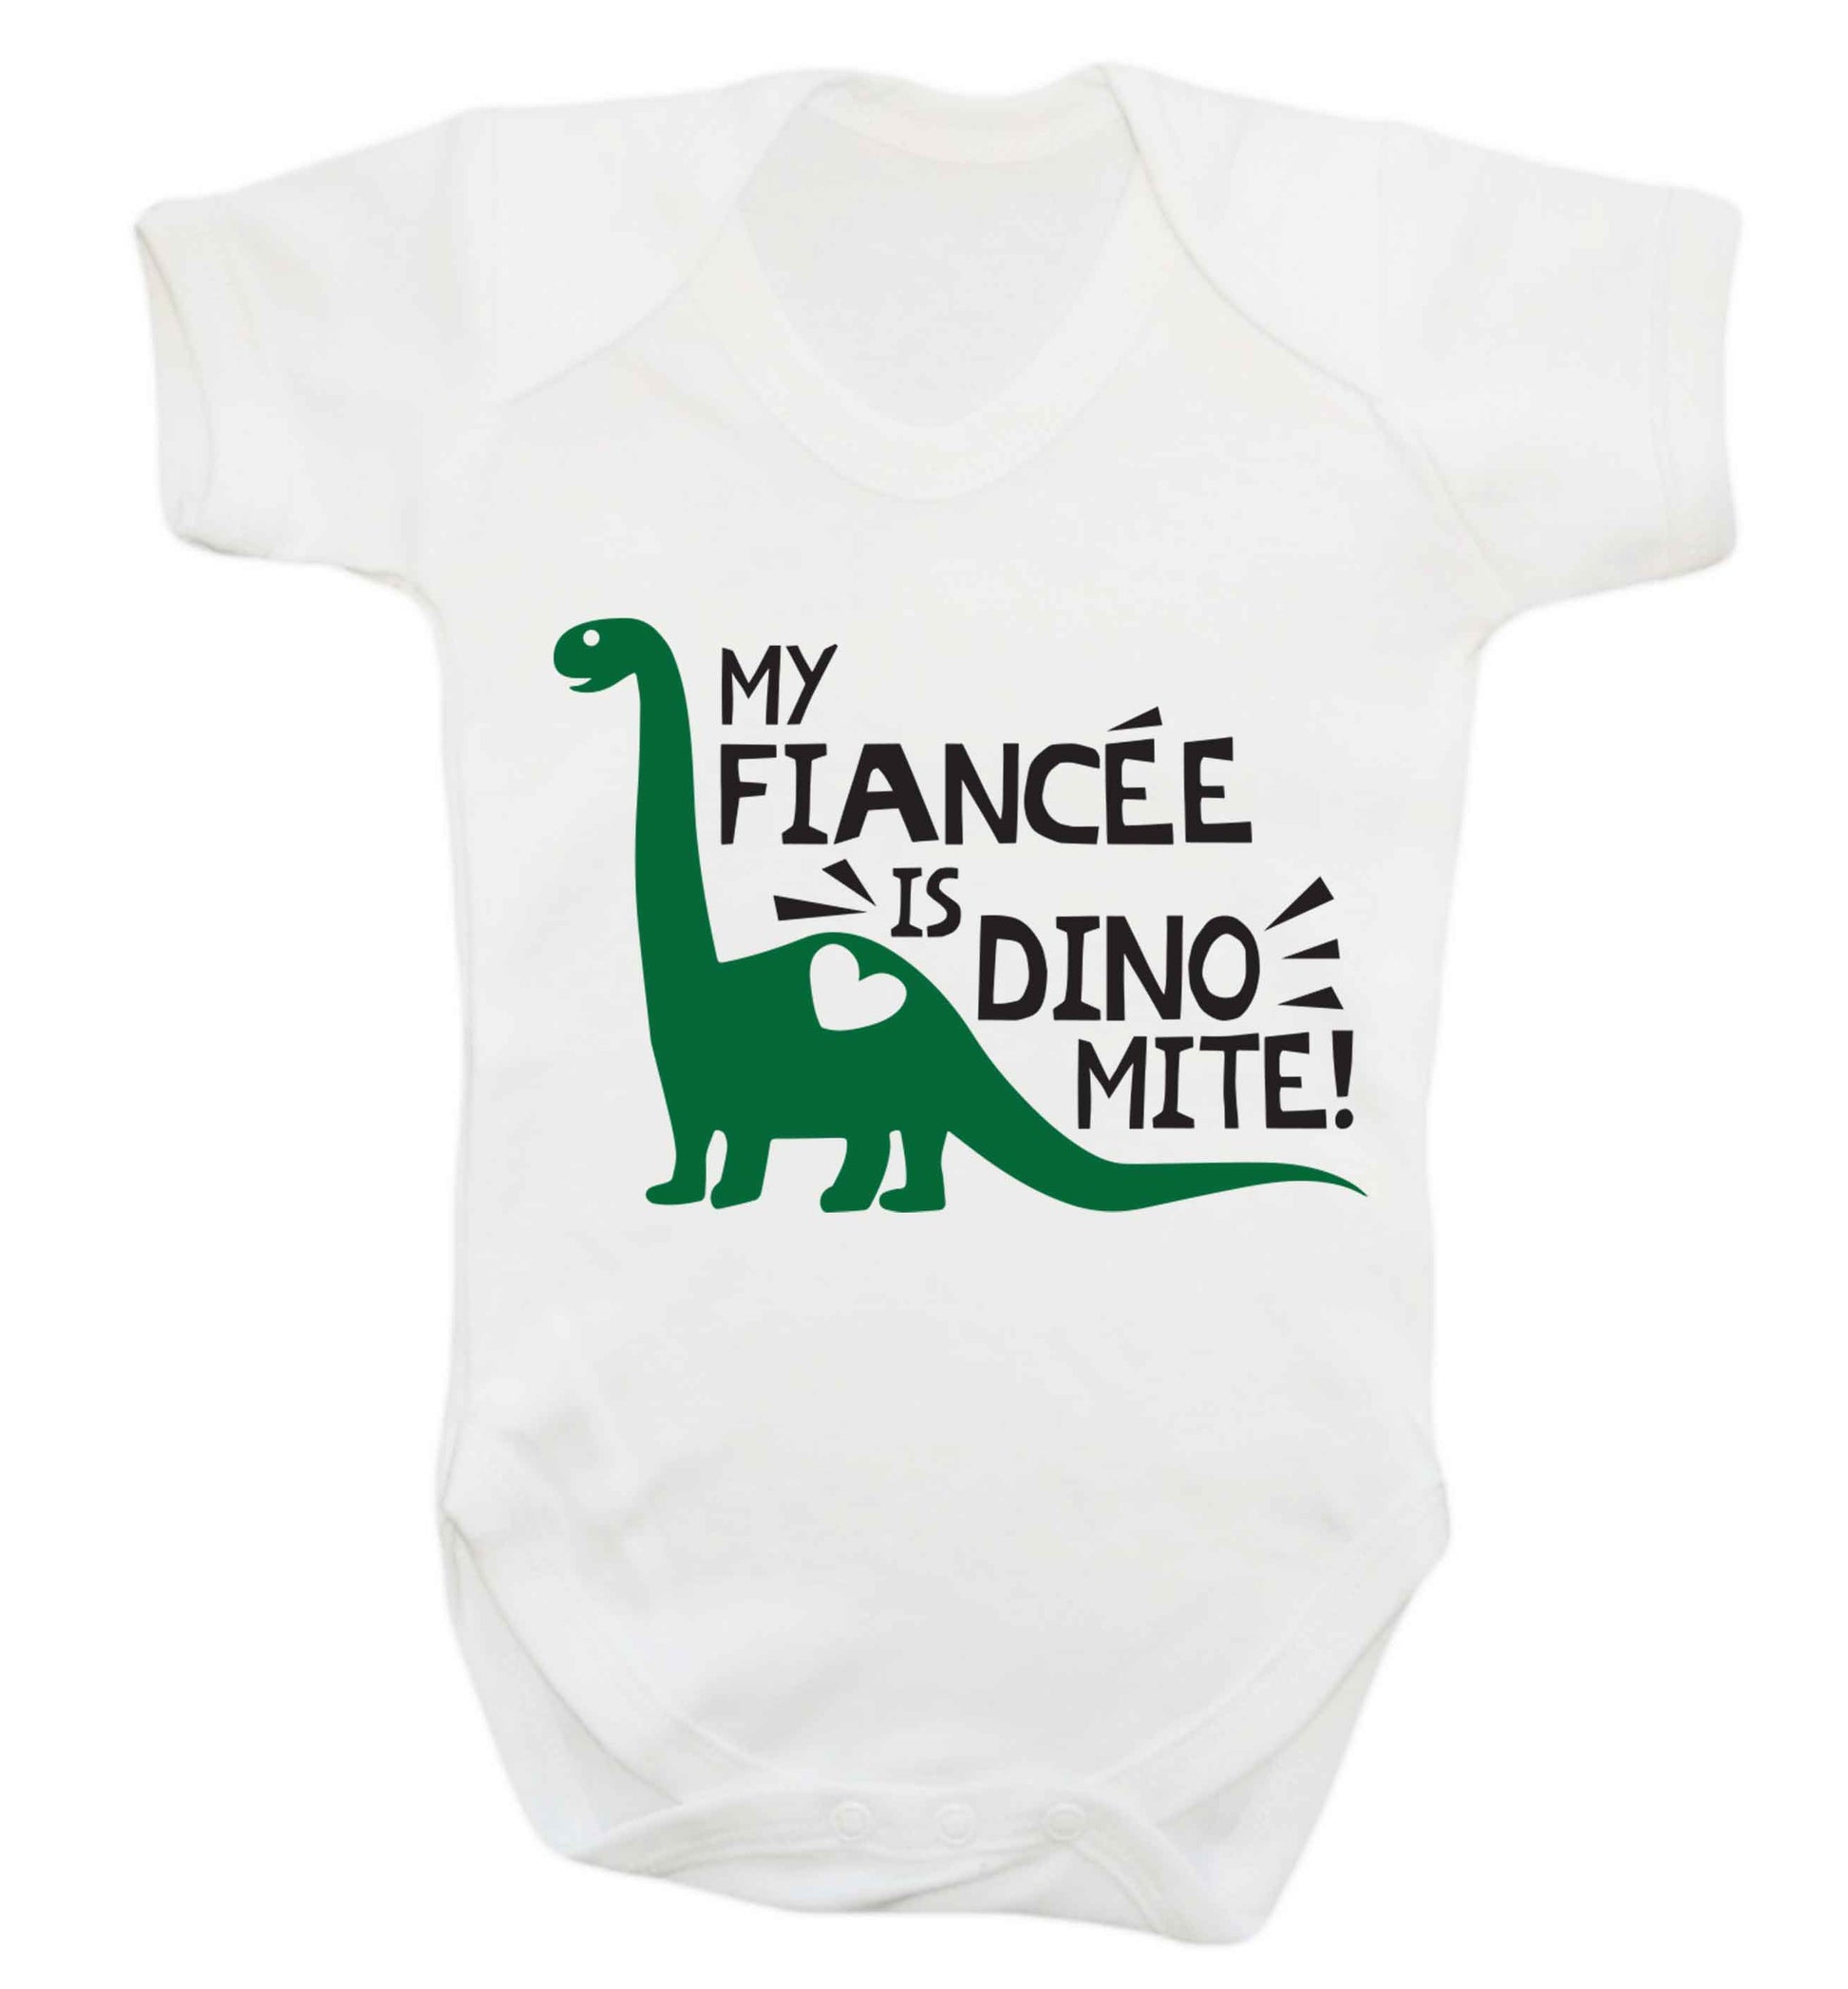 My fiancee is dinomite! Baby Vest white 18-24 months